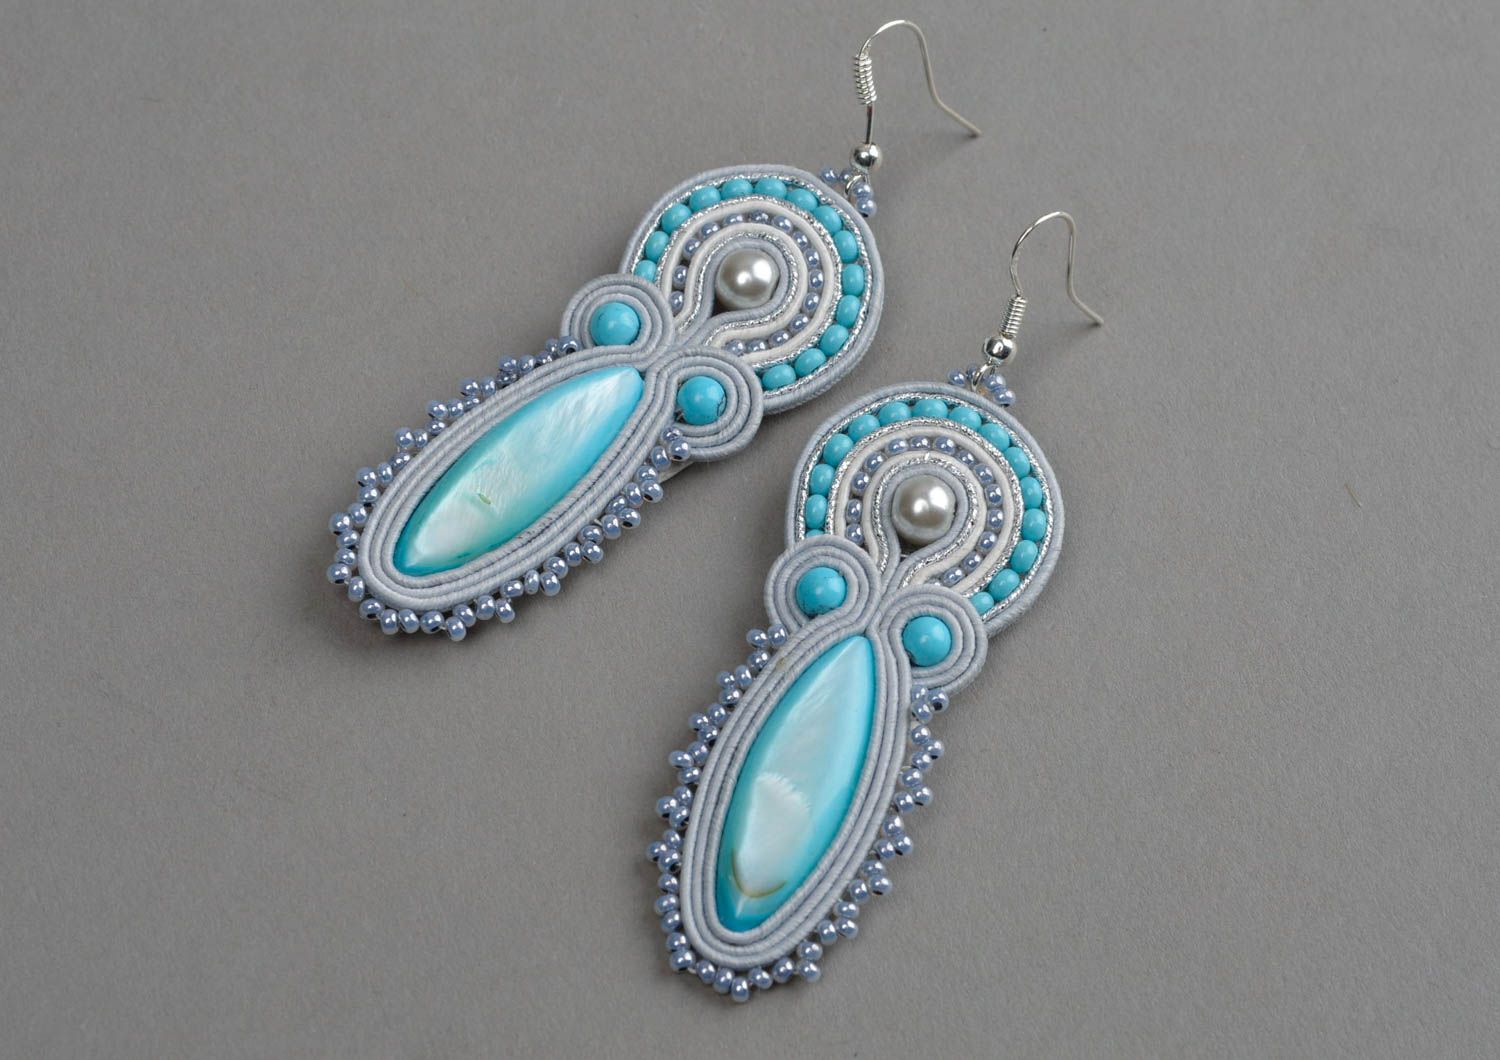 Earrings for women handmade earrings soutache jewelry gift ideas for women photo 2